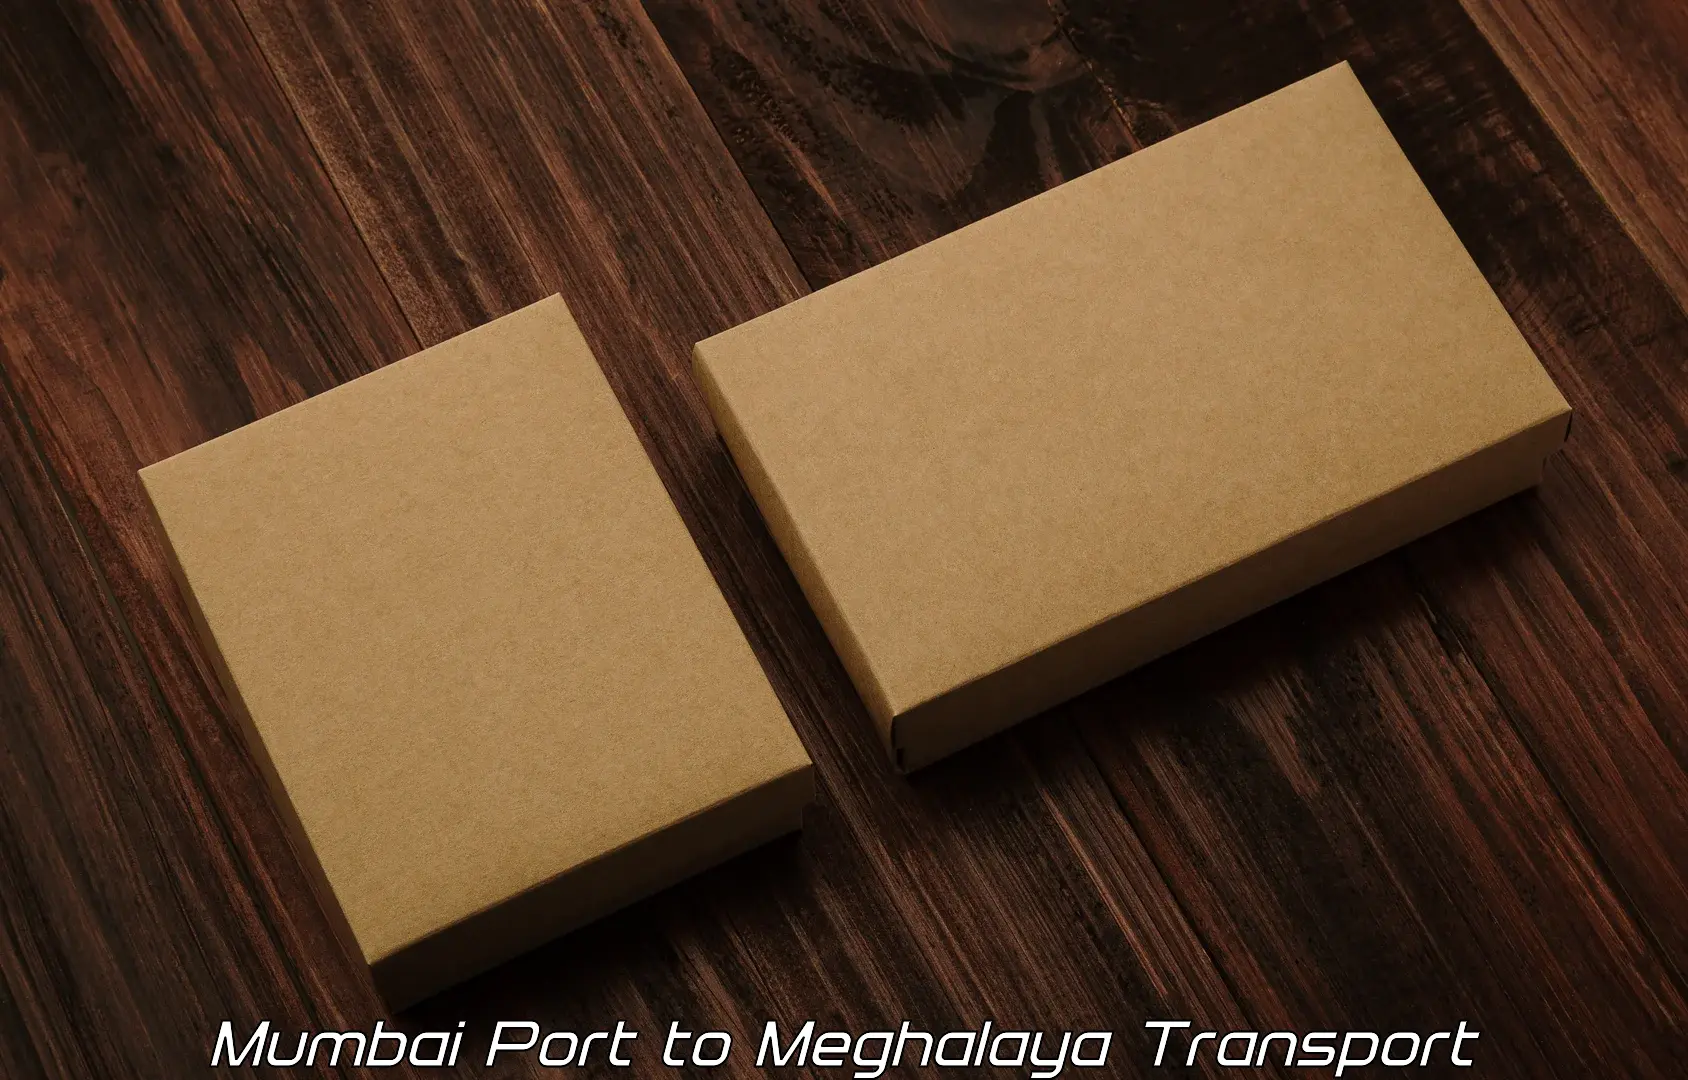 Transport services Mumbai Port to Cherrapunji